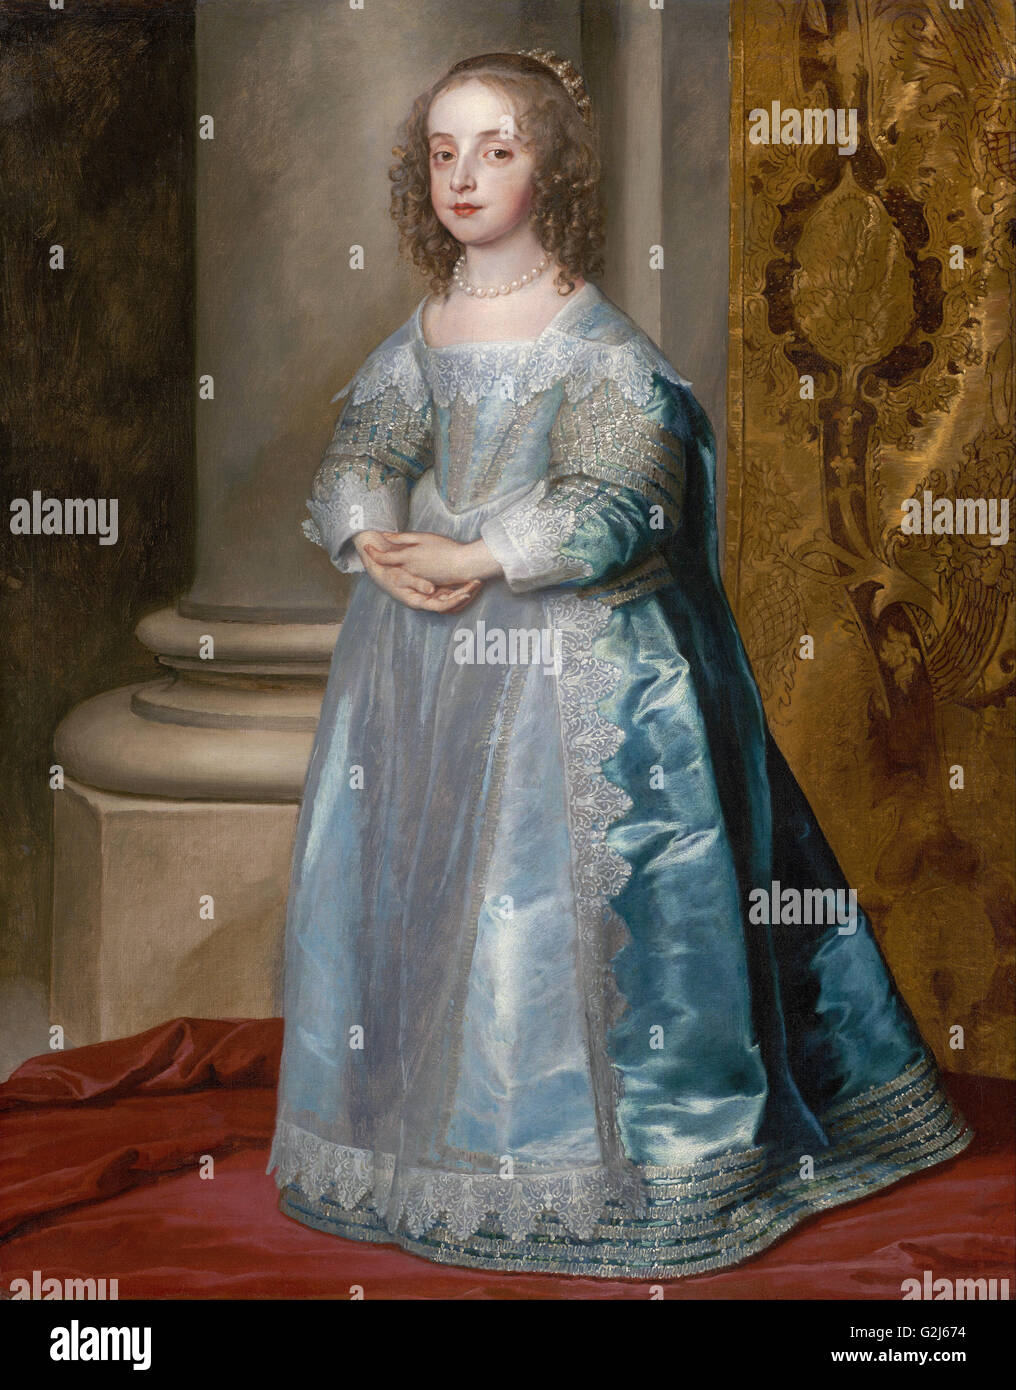 Anthony van Dyck - Prinzessin Mary, Tochter von Charles I - Museum of Fine Arts, Boston Stockfoto